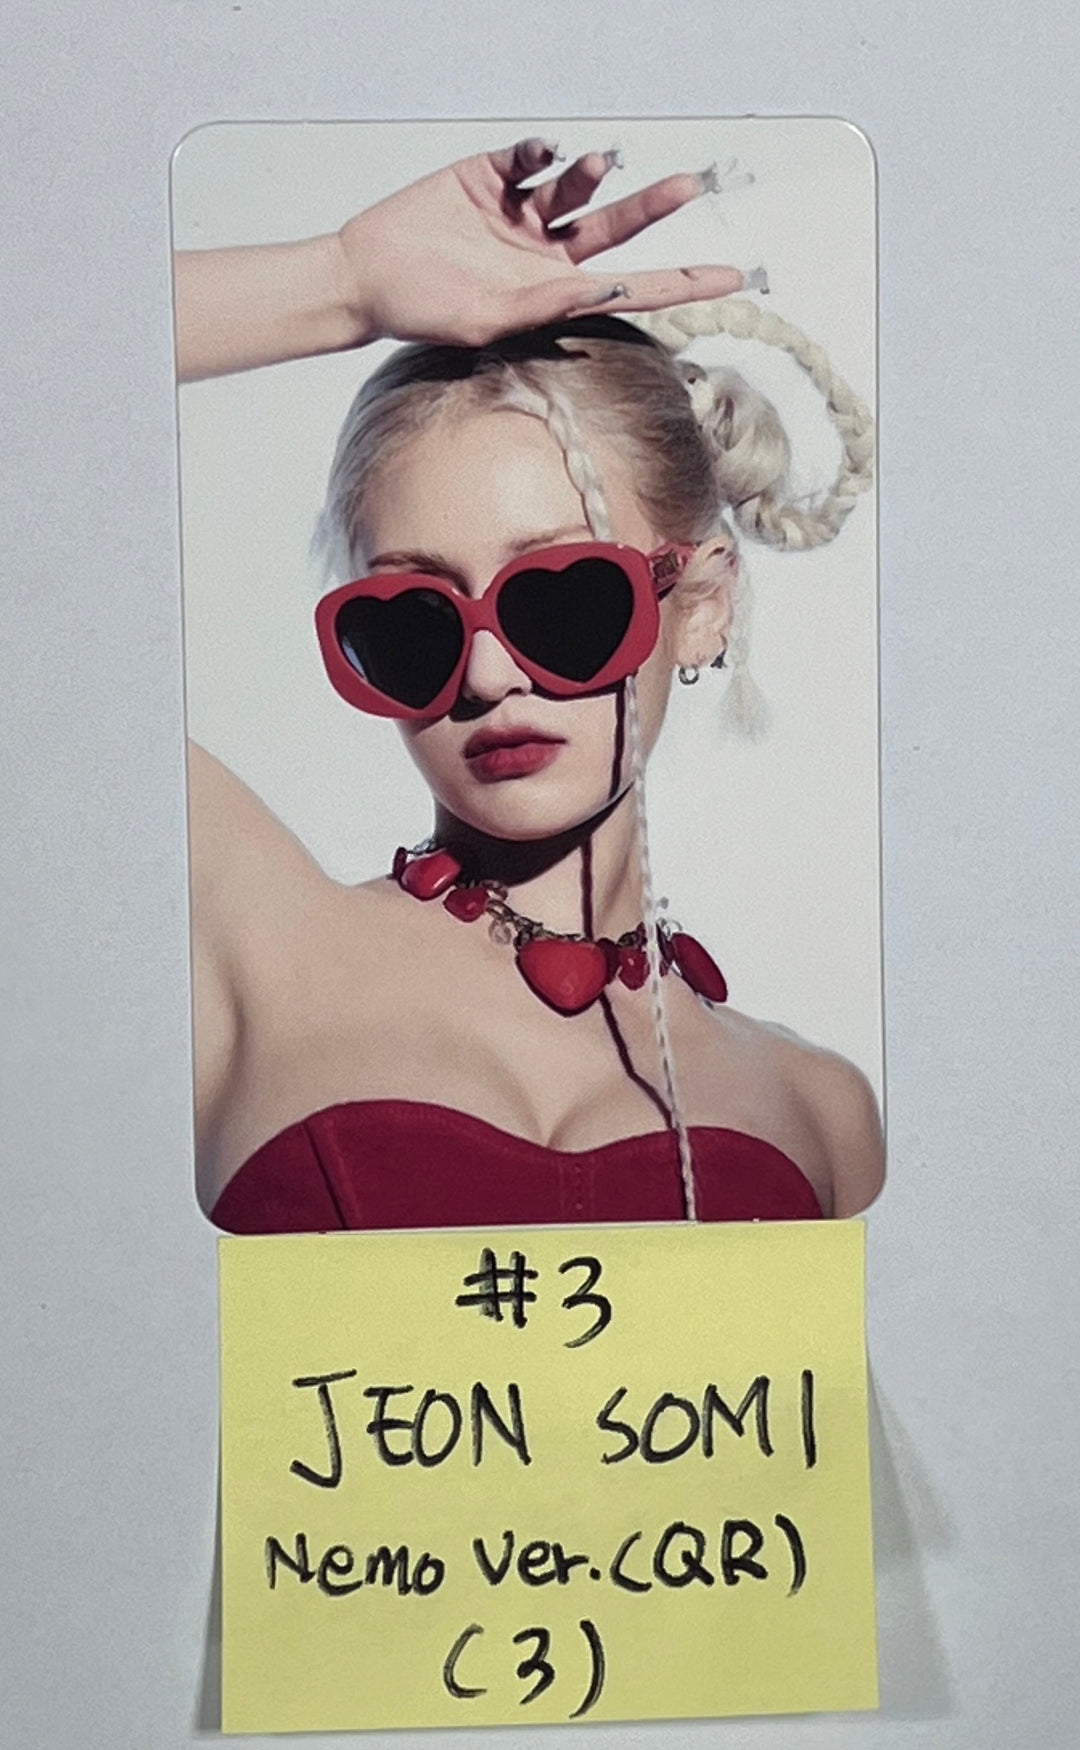 JEON SOMI "GAME PLAN" - Official Photocard [NEMO Ver.] [23.08.23]